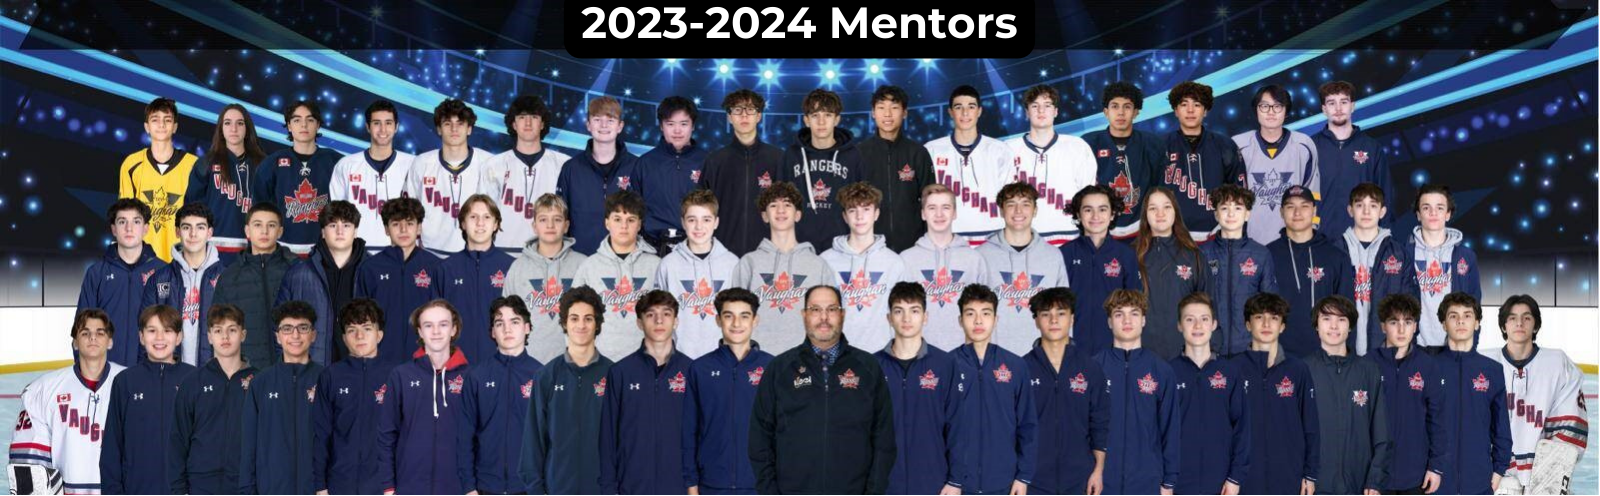 2023-2024_Mentors.png